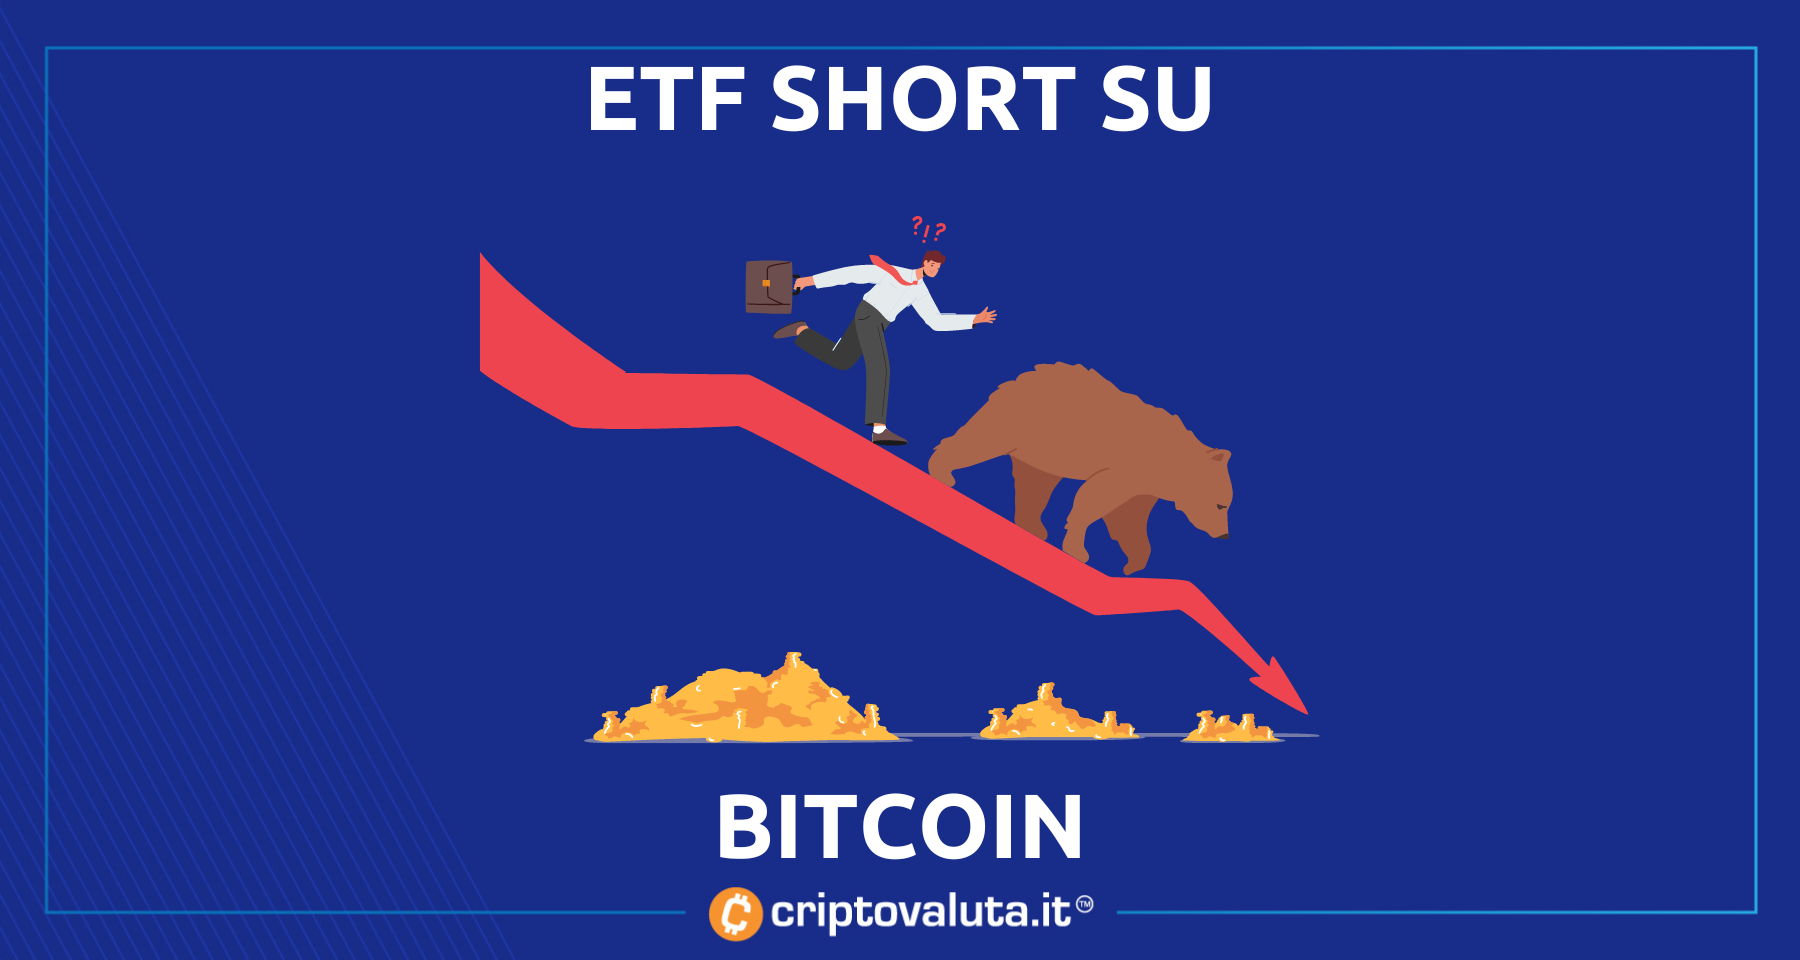 ProShares: ETF short su Bitcoin! | Perché non dobbiamo preoccuparci?